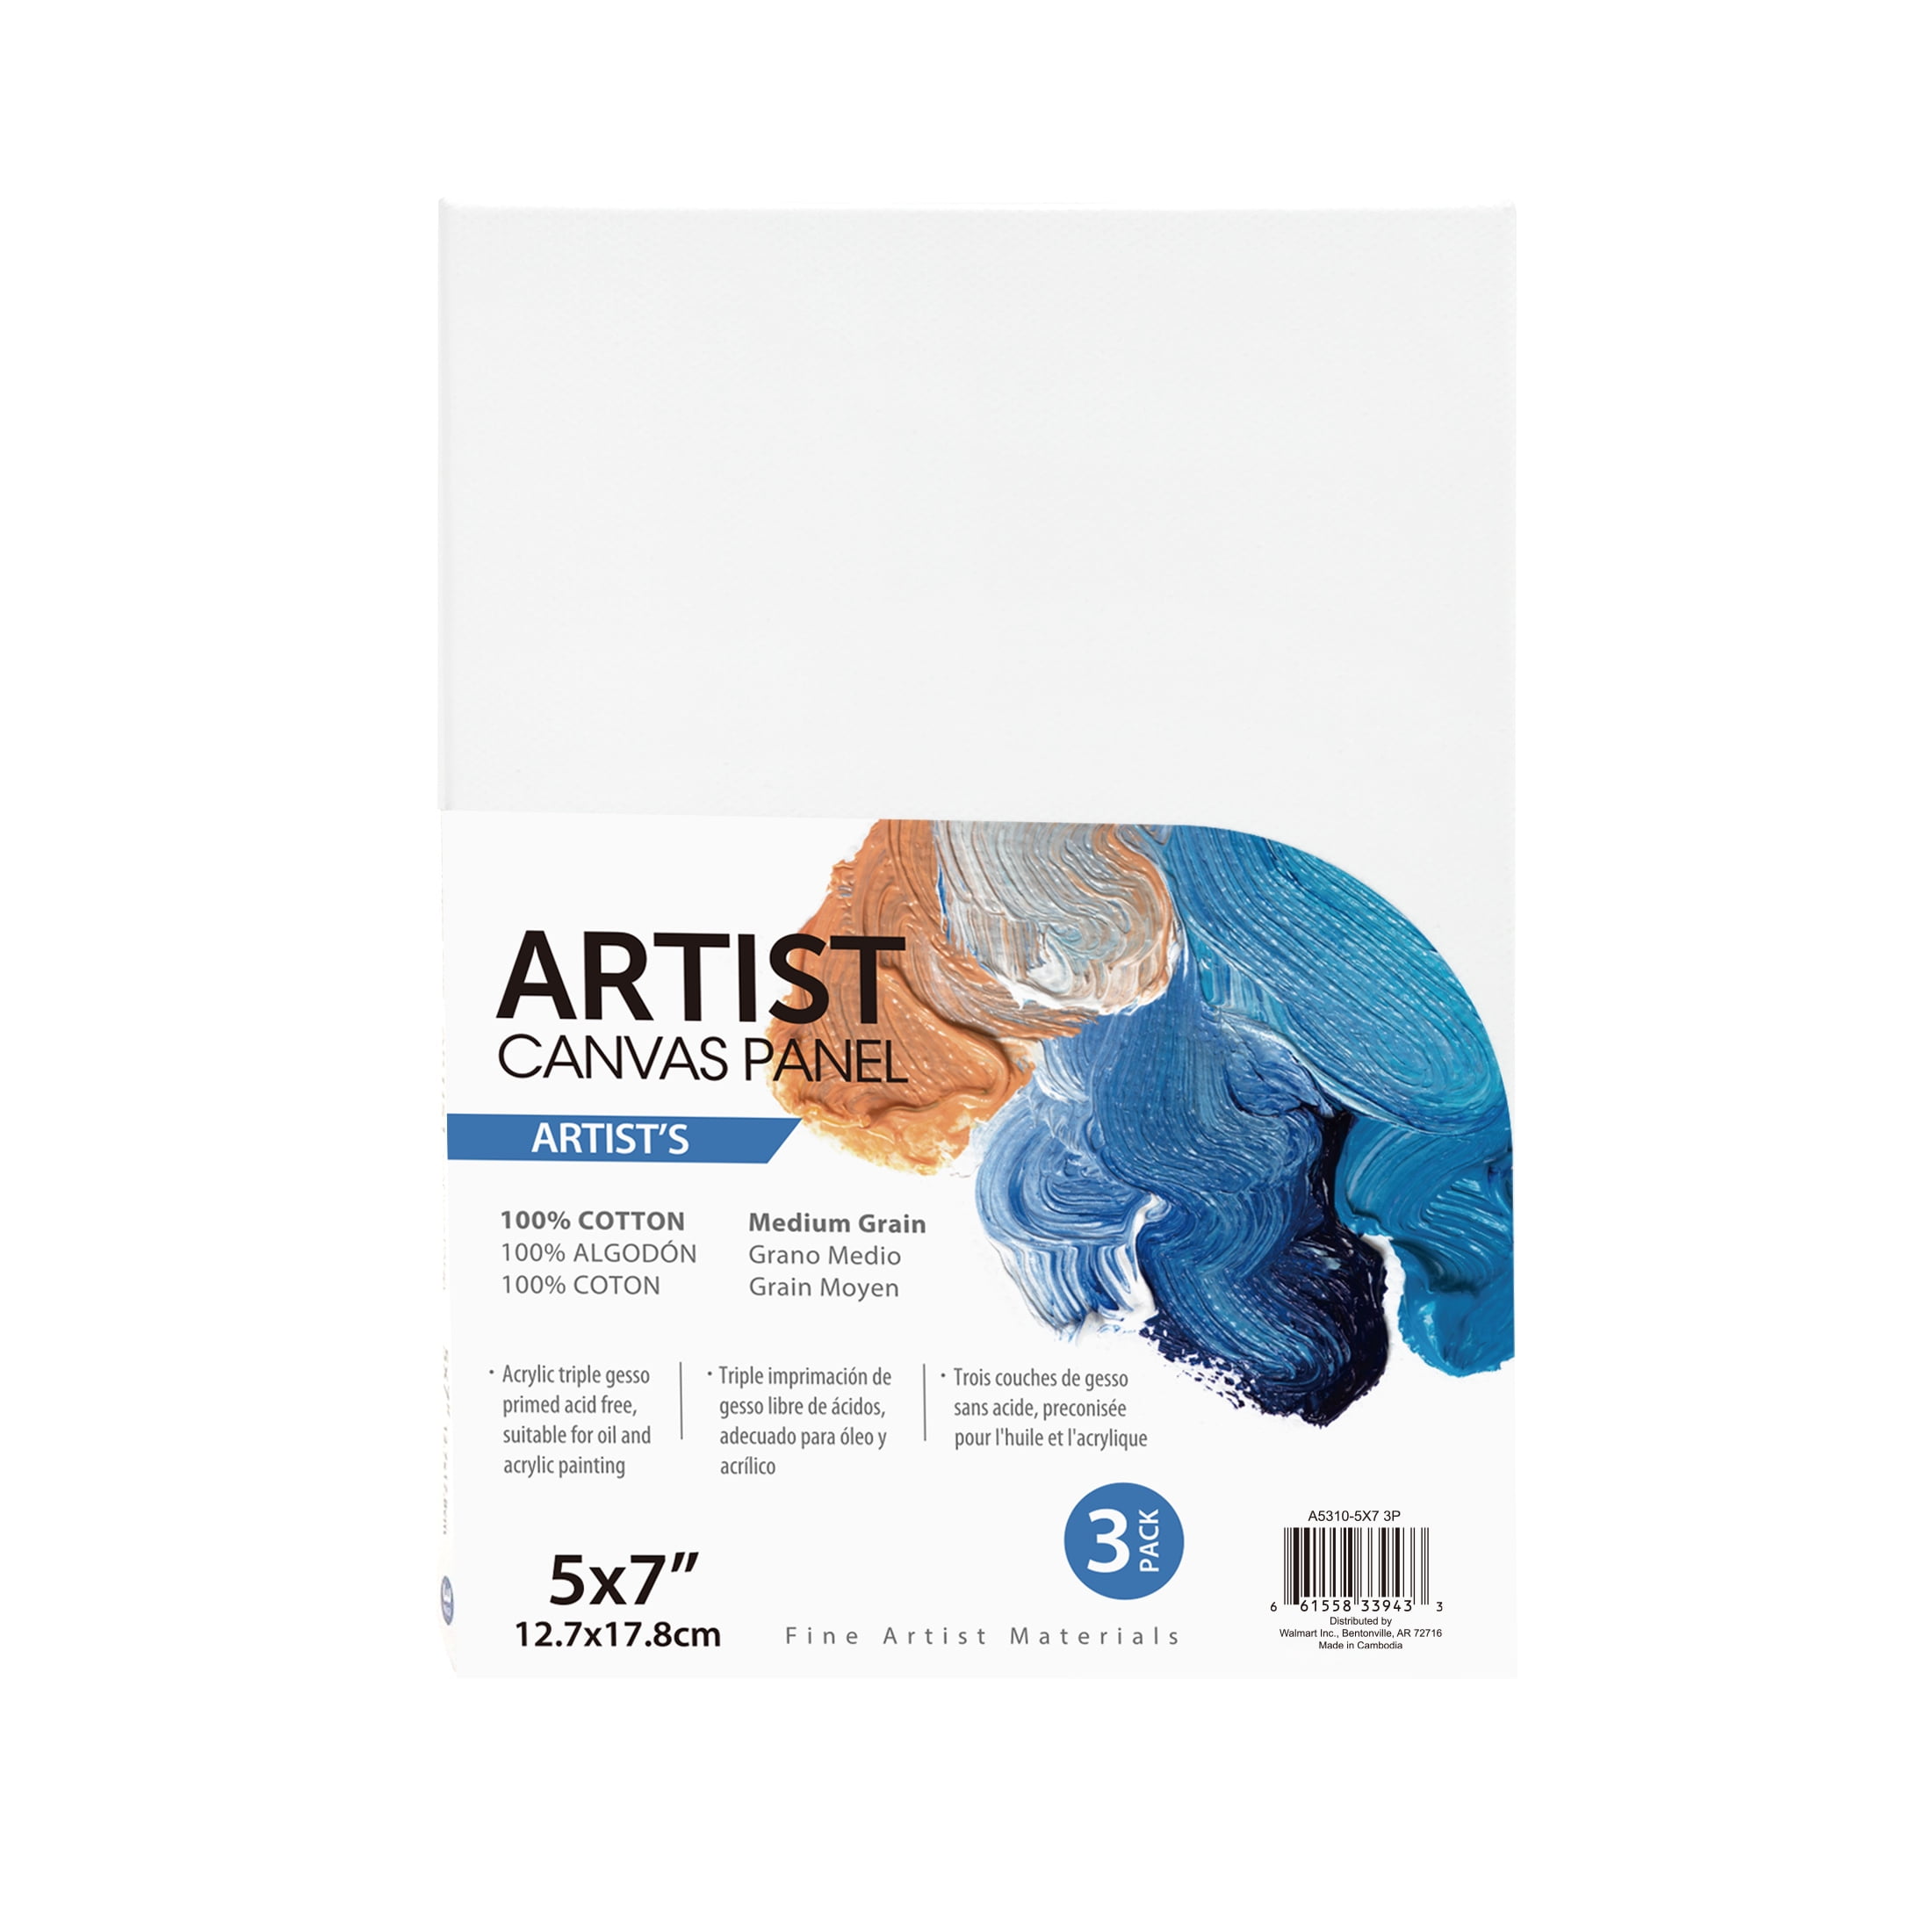 Artist Canvas Panel, 100% Cotton Acid Free White Canvas, 5"X7", 3 Pieces